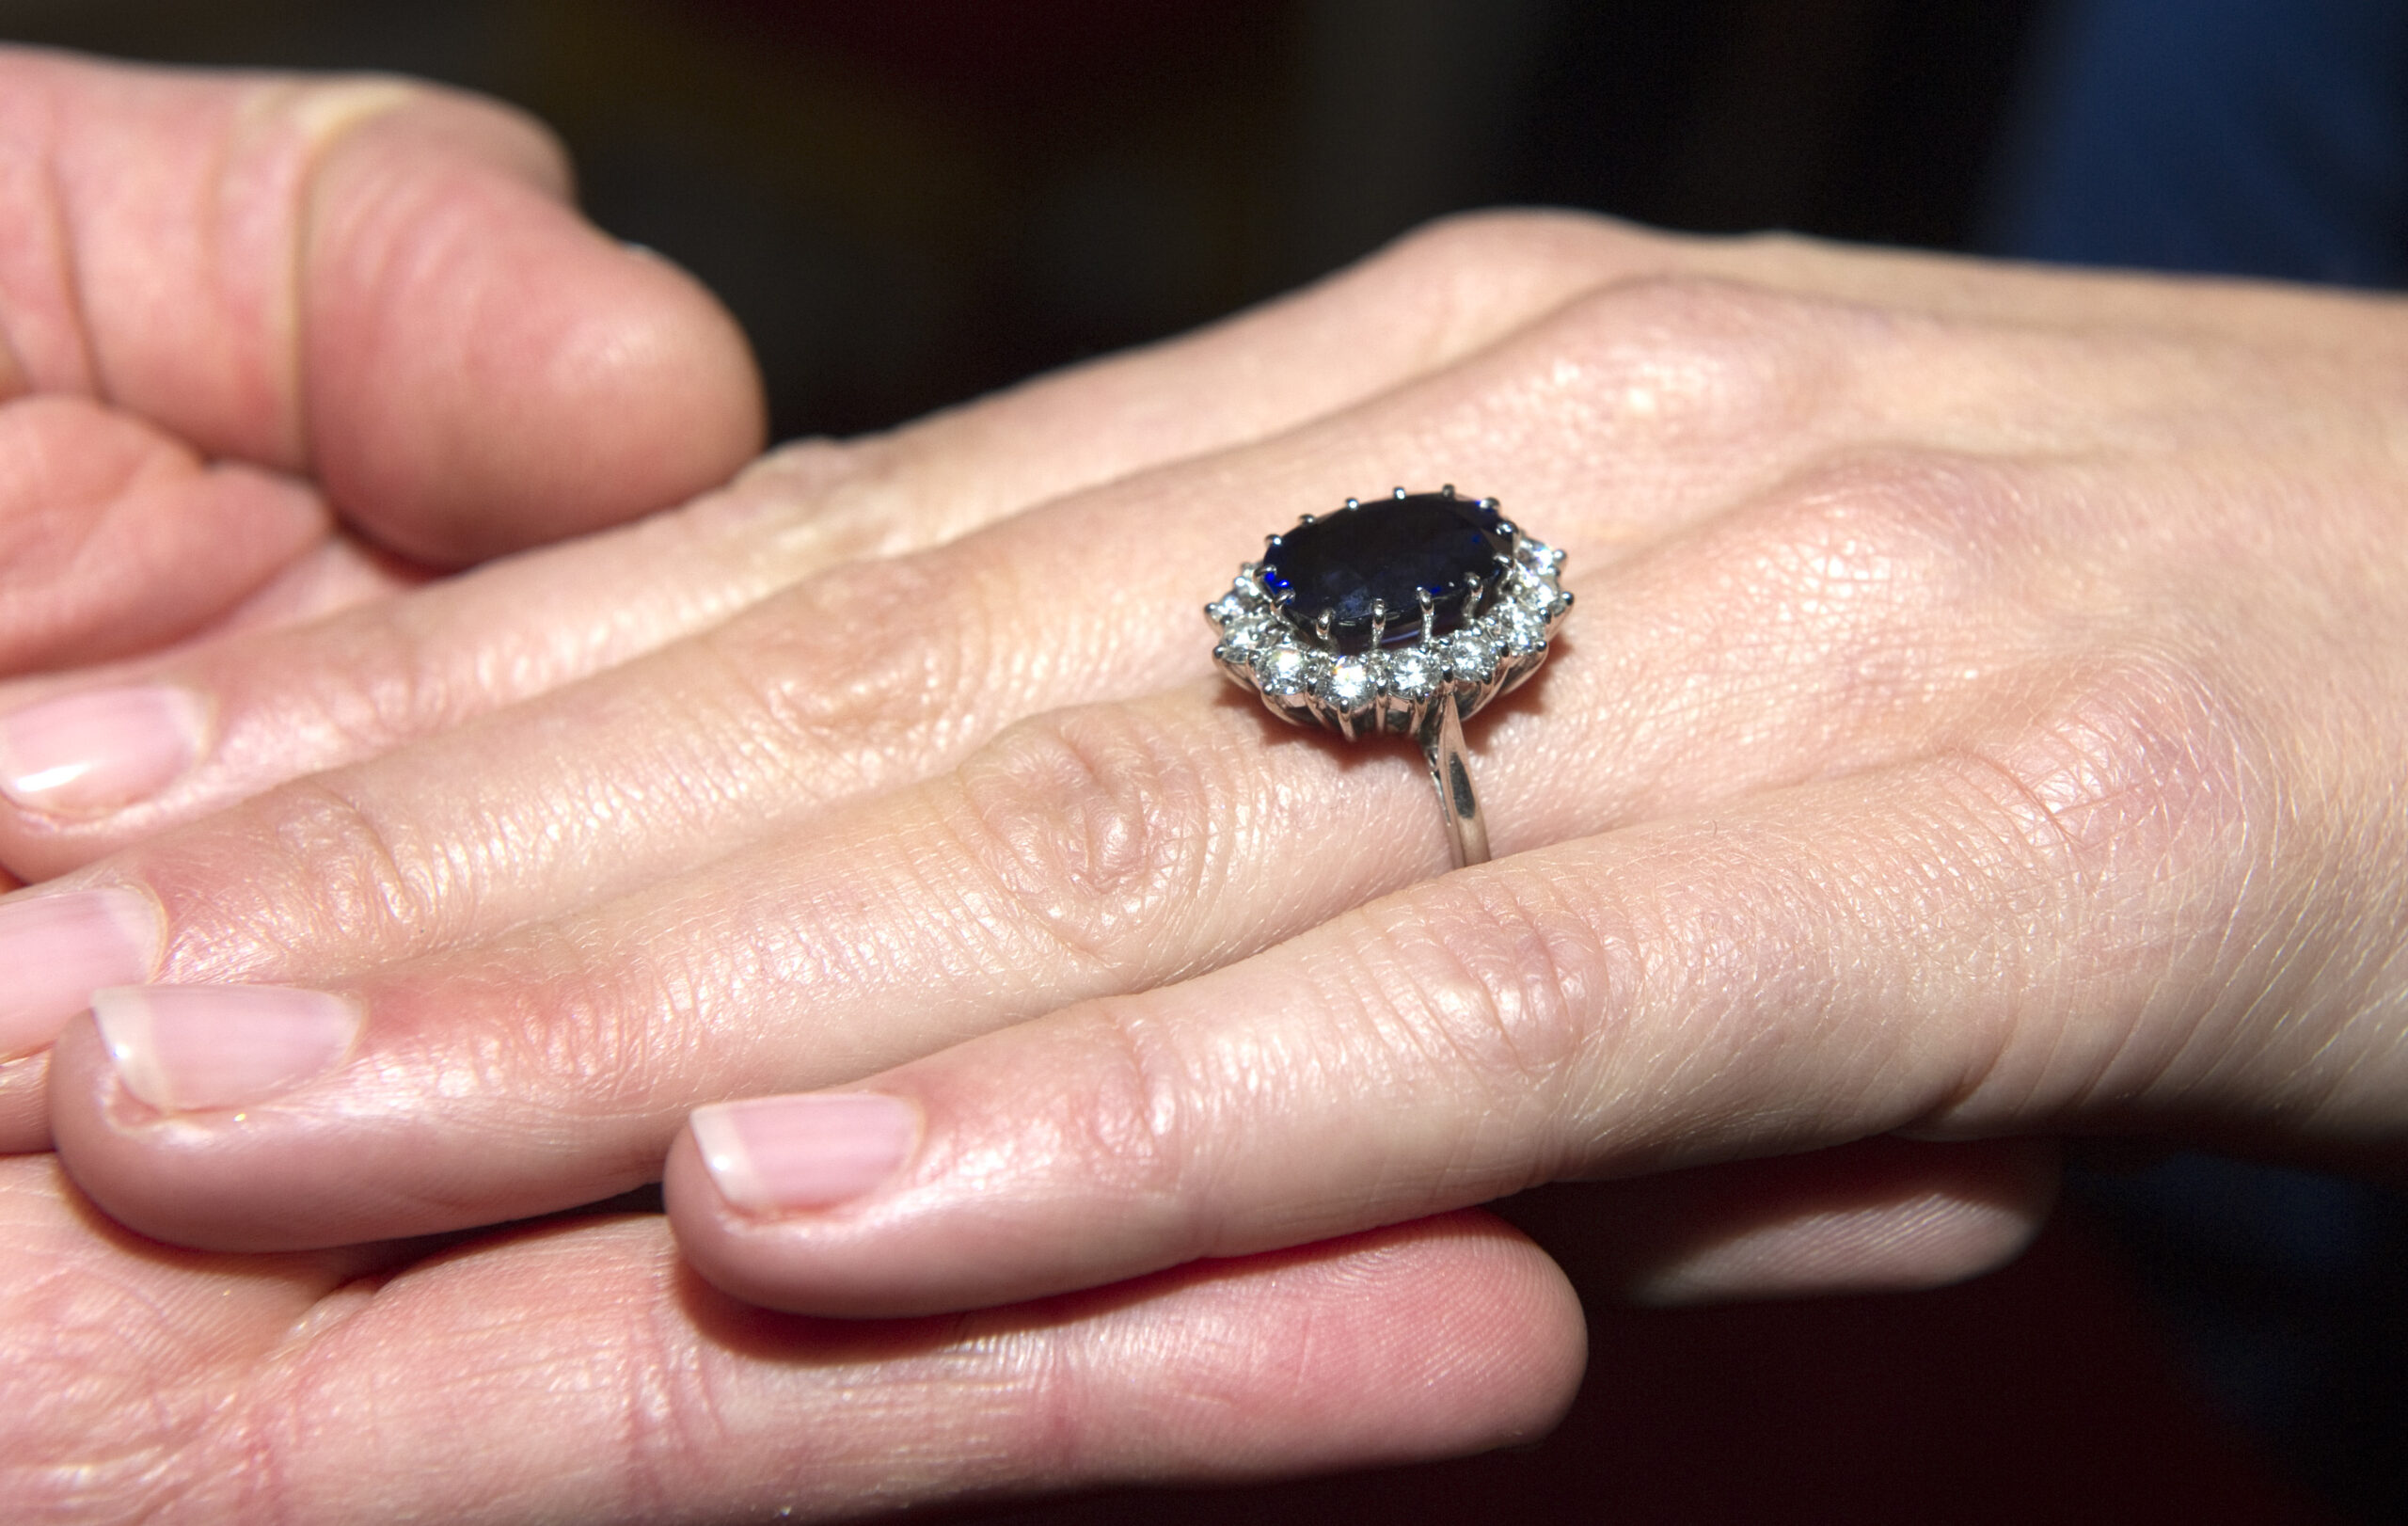 Inelul de logodnă al ducesei de Cambridge, care a aparținut prințesei Diana. Un safir, încadrat de 14 diamante solitare.